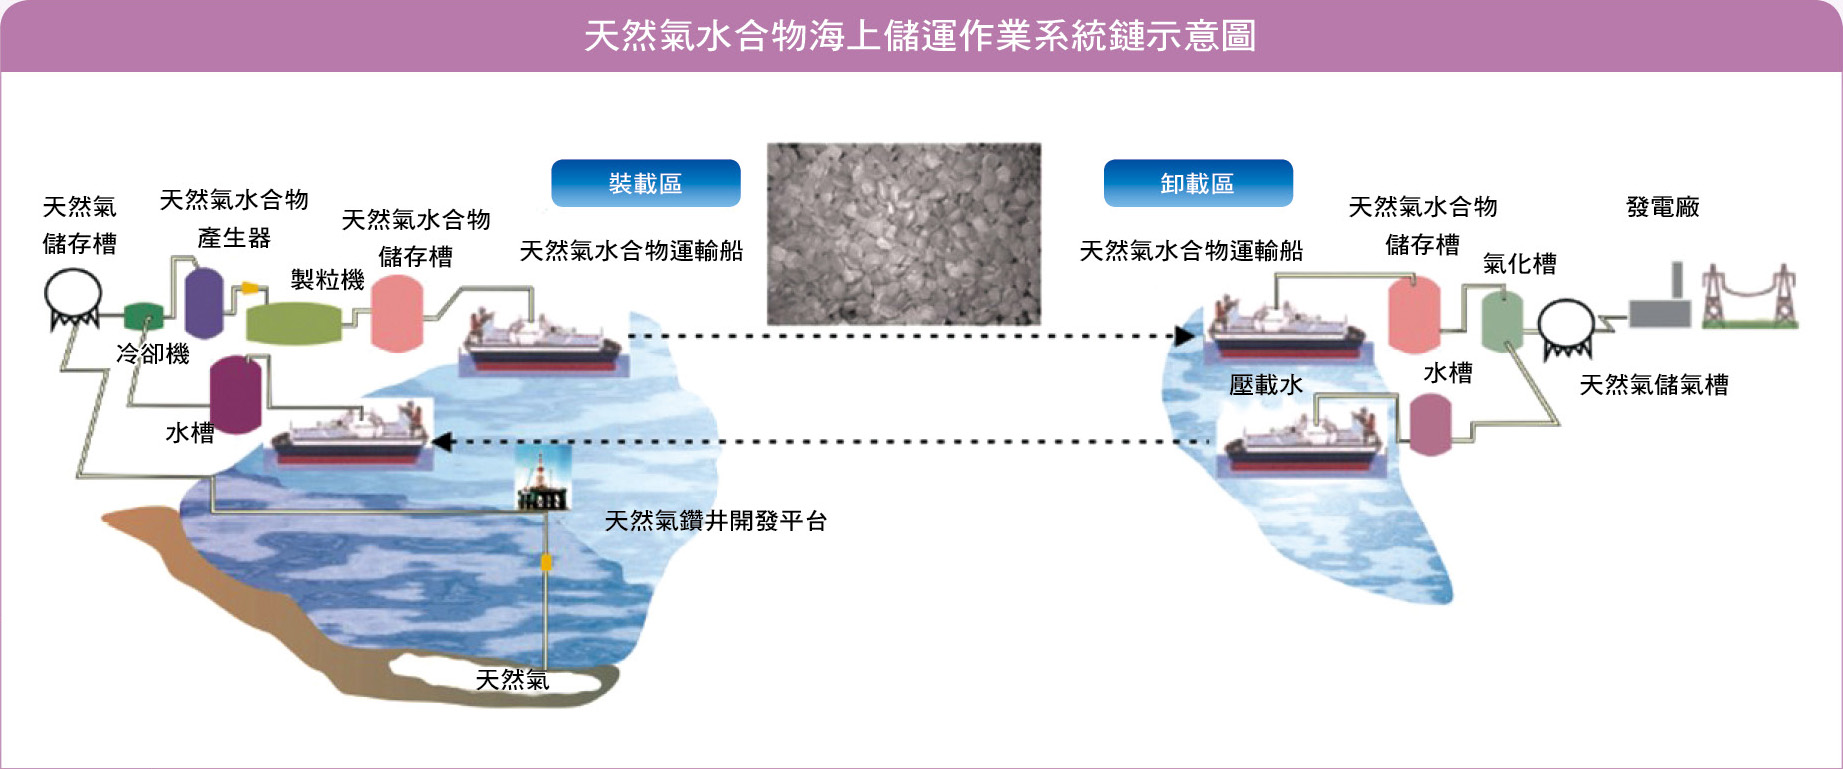 天然氣水合物海上儲運作業系統鏈示意圖（圖片來源：臺灣能源期刊第一卷第一期p.60, 2013）